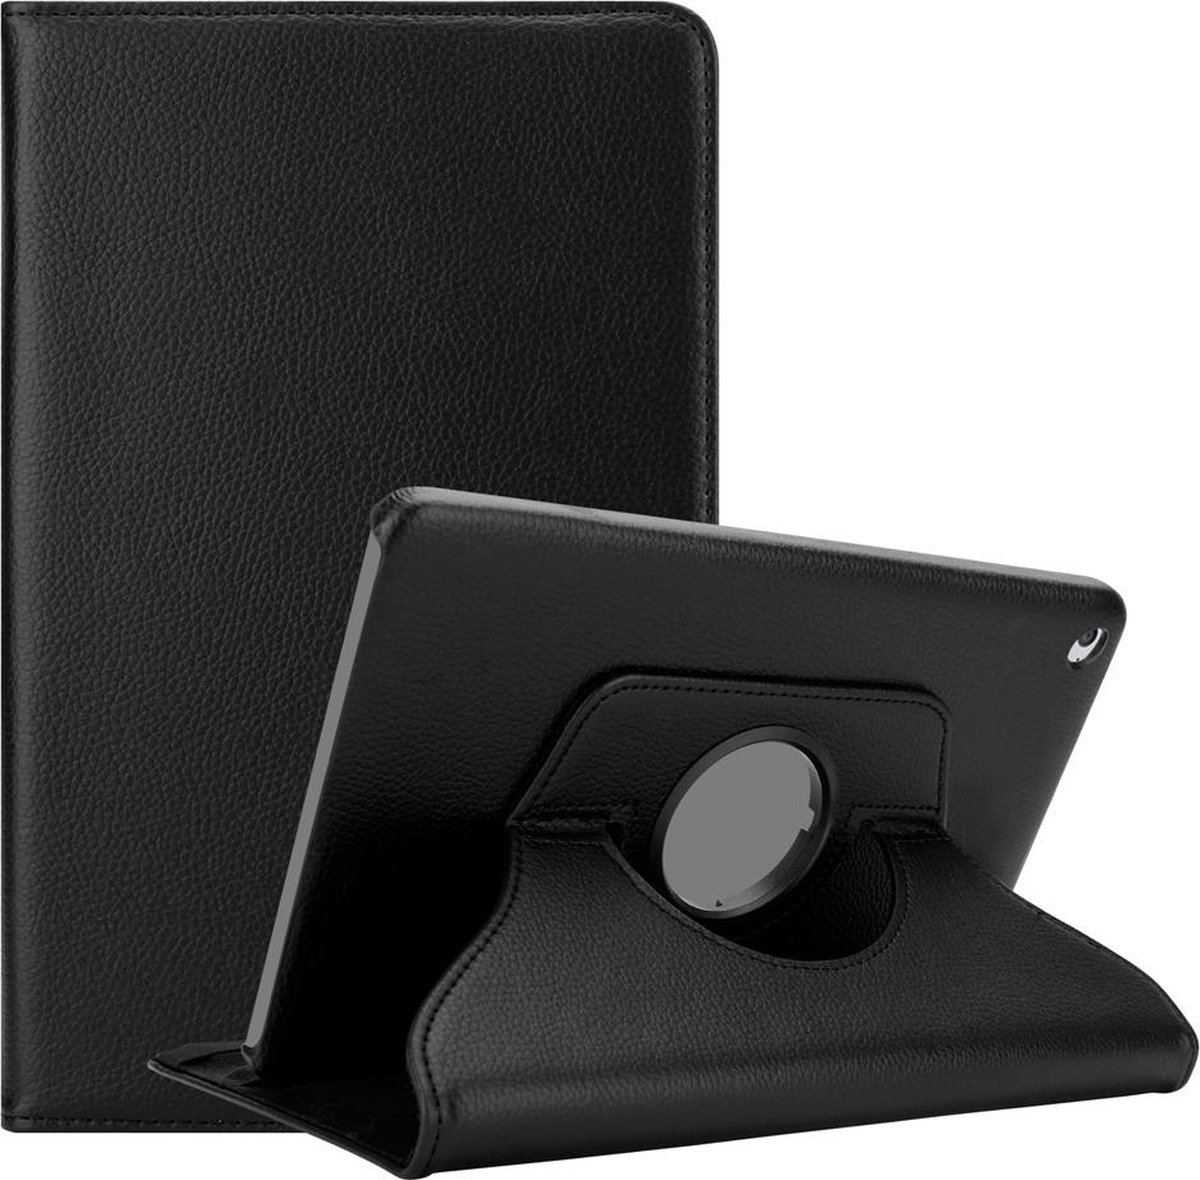 Cadorabo Tablet Hoesje voor Apple iPad 2 / 3 / 4 in OUDERLING ZWART - Beschermhoes met Auto Wake Up, met standfunctie en elastieksluiting Book Case Cover Etui